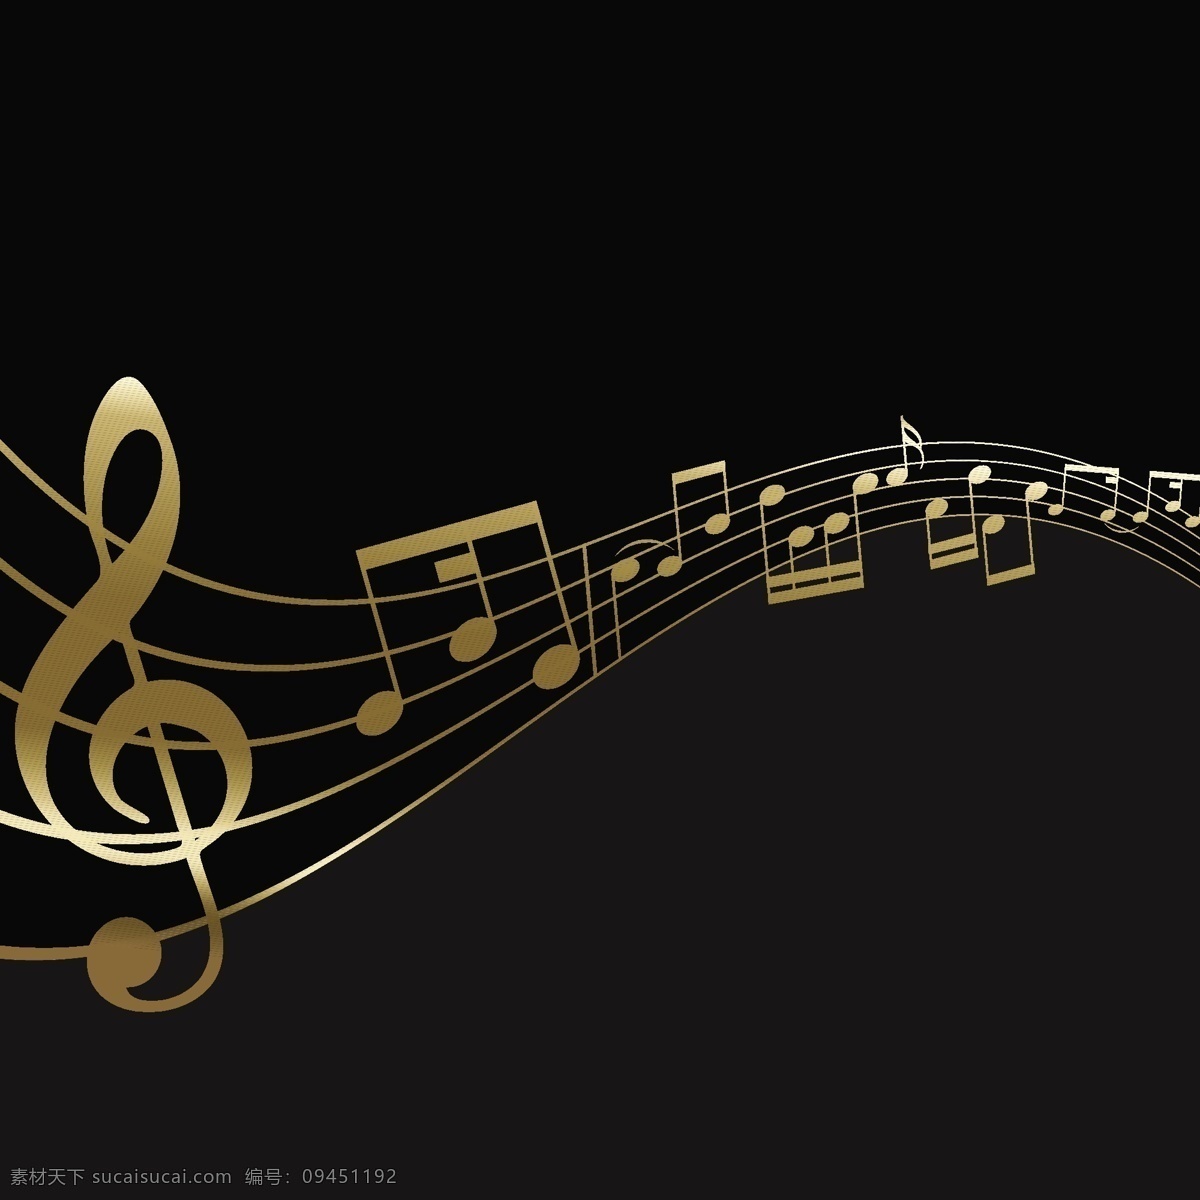 背景音乐 音乐 音符 摘要 注释 歌曲 人员 谱号 旋律组成 高音谱号 高音调 黑色